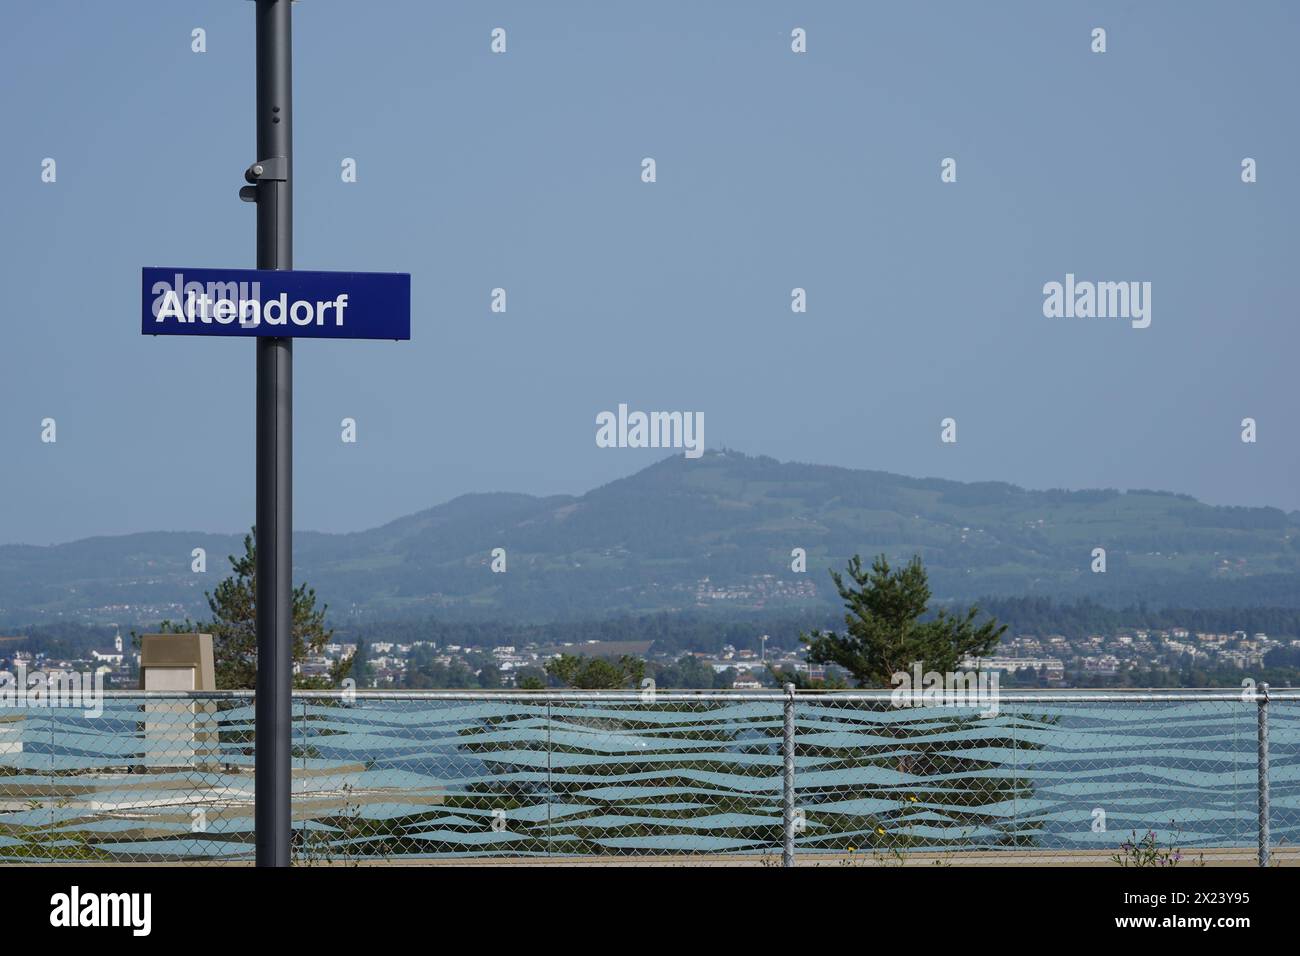 Metallschild mit blauem Schild, das den Namen des Dorfes Altendorf in der Schweiz sagt. Der Zürichsee und die Berge liegen im Hintergrund. Stockfoto